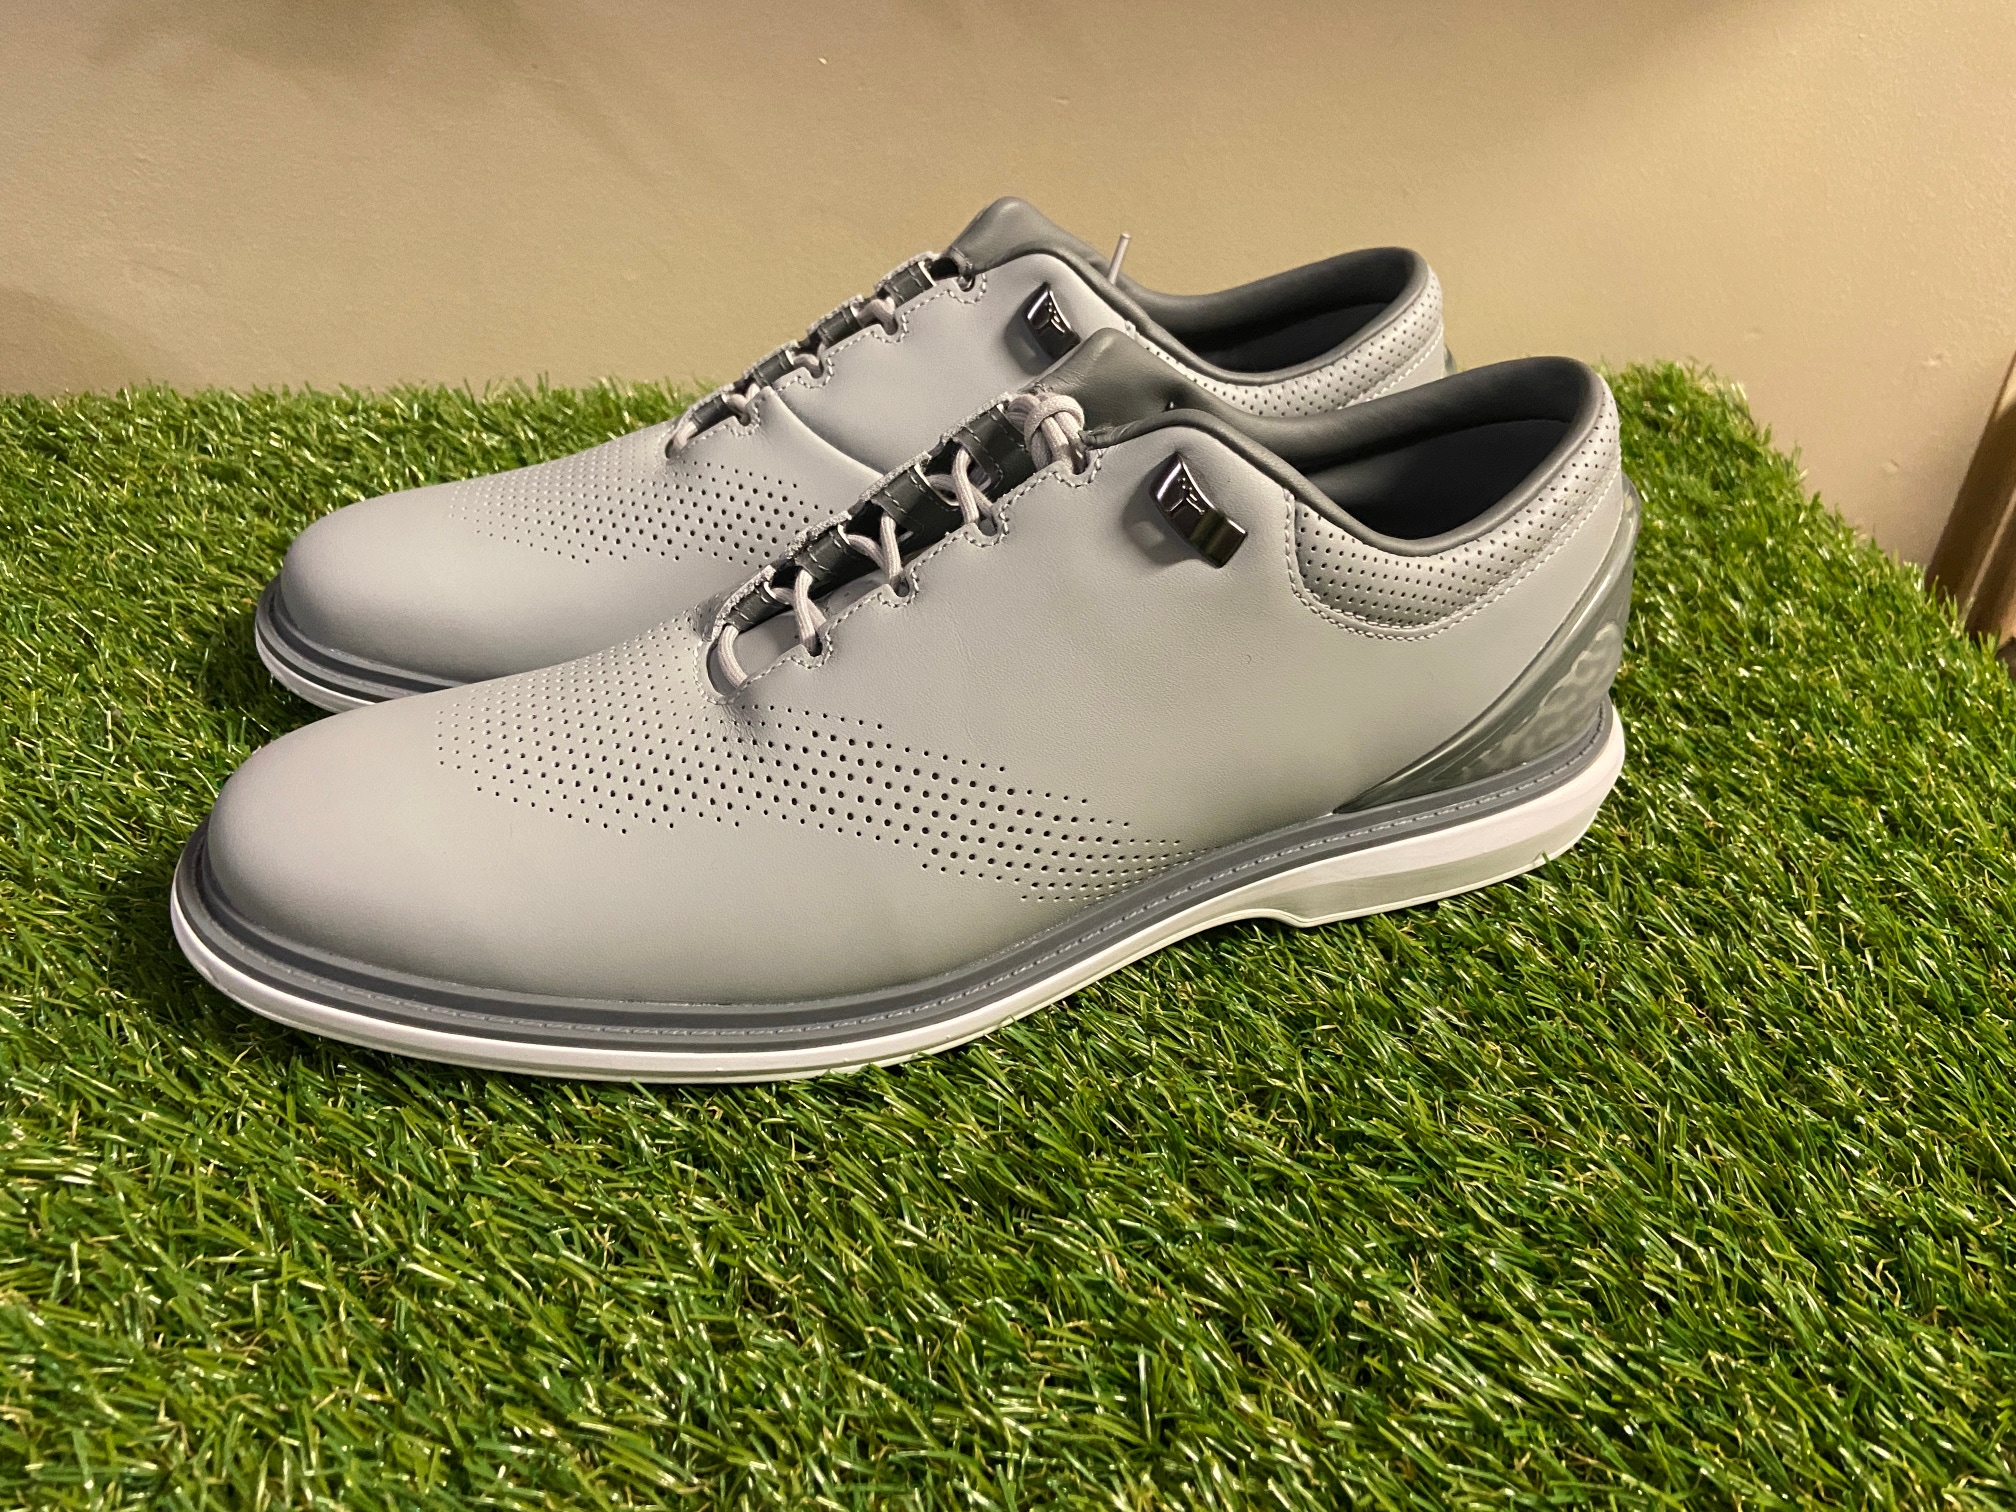 New Nike Air Jordan ADG 4 Men's Sz 11 Spikeless Golf Shoes Wolf Grey DM0103-010